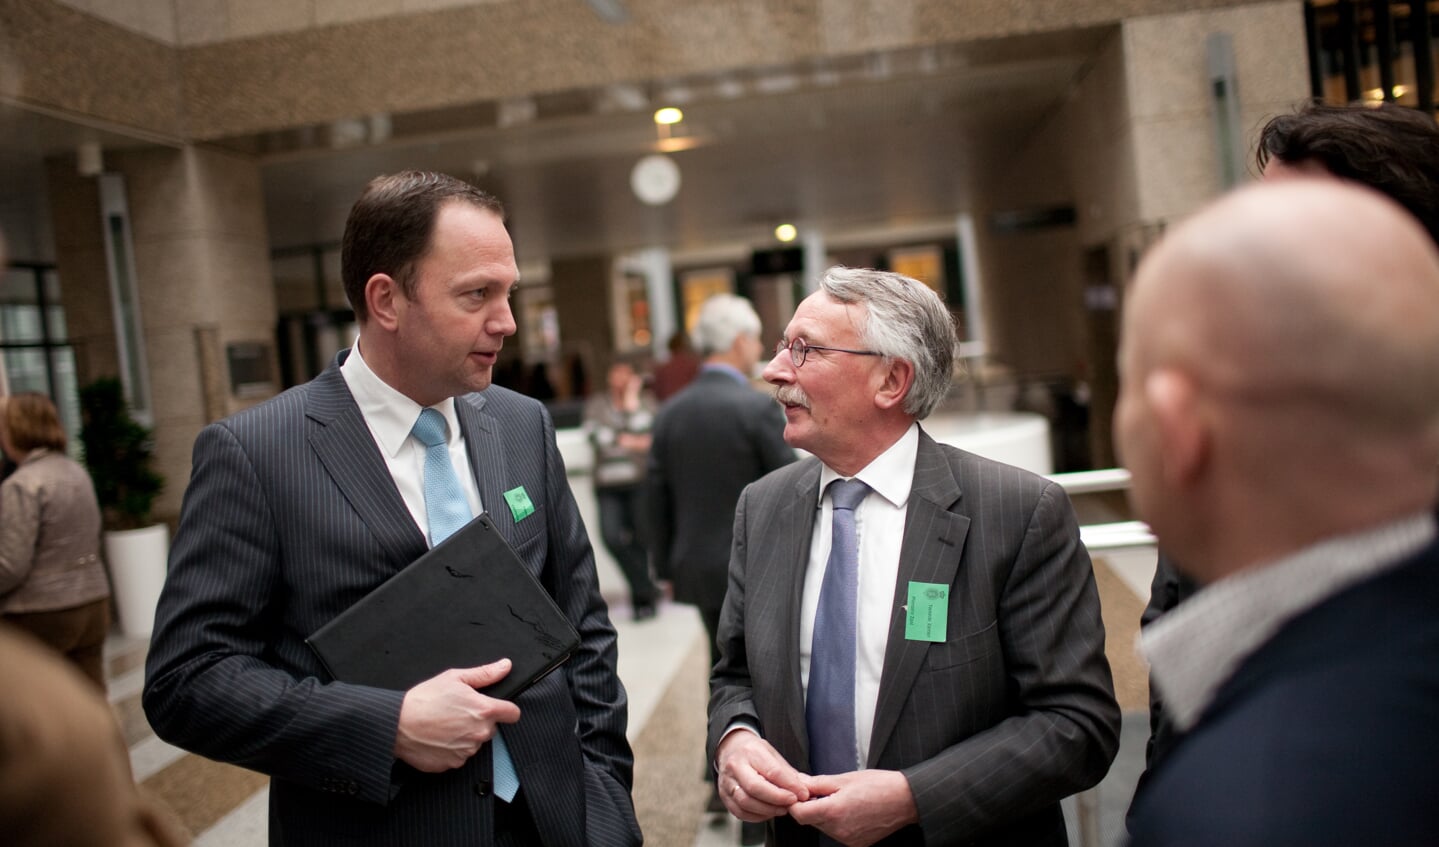 De burgemeesters van Bussum en Weesp spreken elkaar in Den Haag